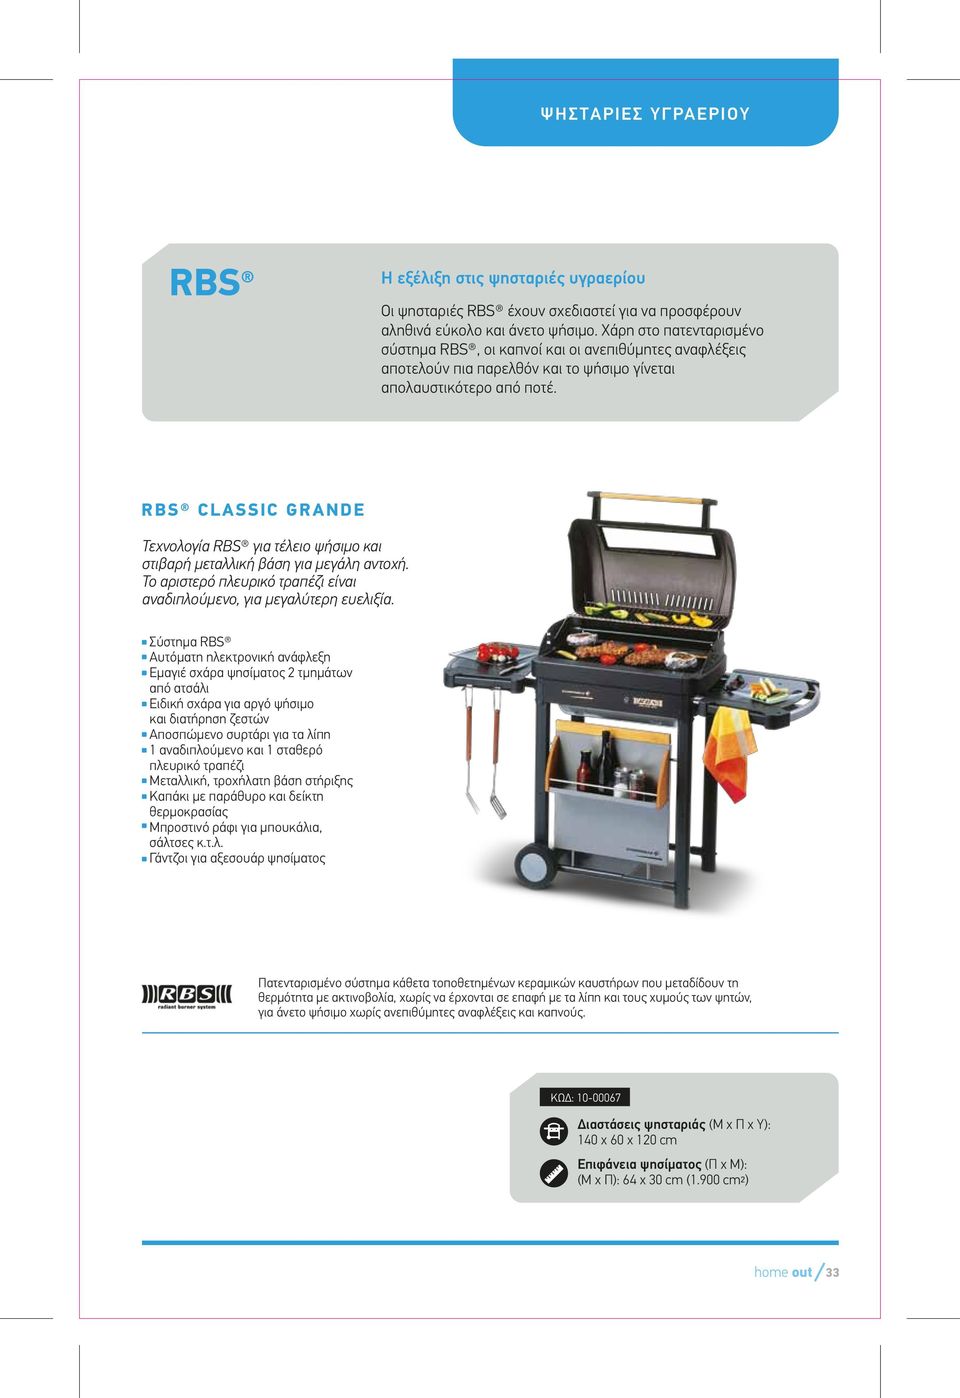 RBS CLASSIC GRANDE Τεχνολογία RBS για τέλειο ψήσιµο και στιβαρή µεταλλική βάση για µεγάλη αντοχή. Το αριστερό πλευρικό τραπέζι είναι αναδιπλούµενο, για µεγαλύτερη ευελιξία.